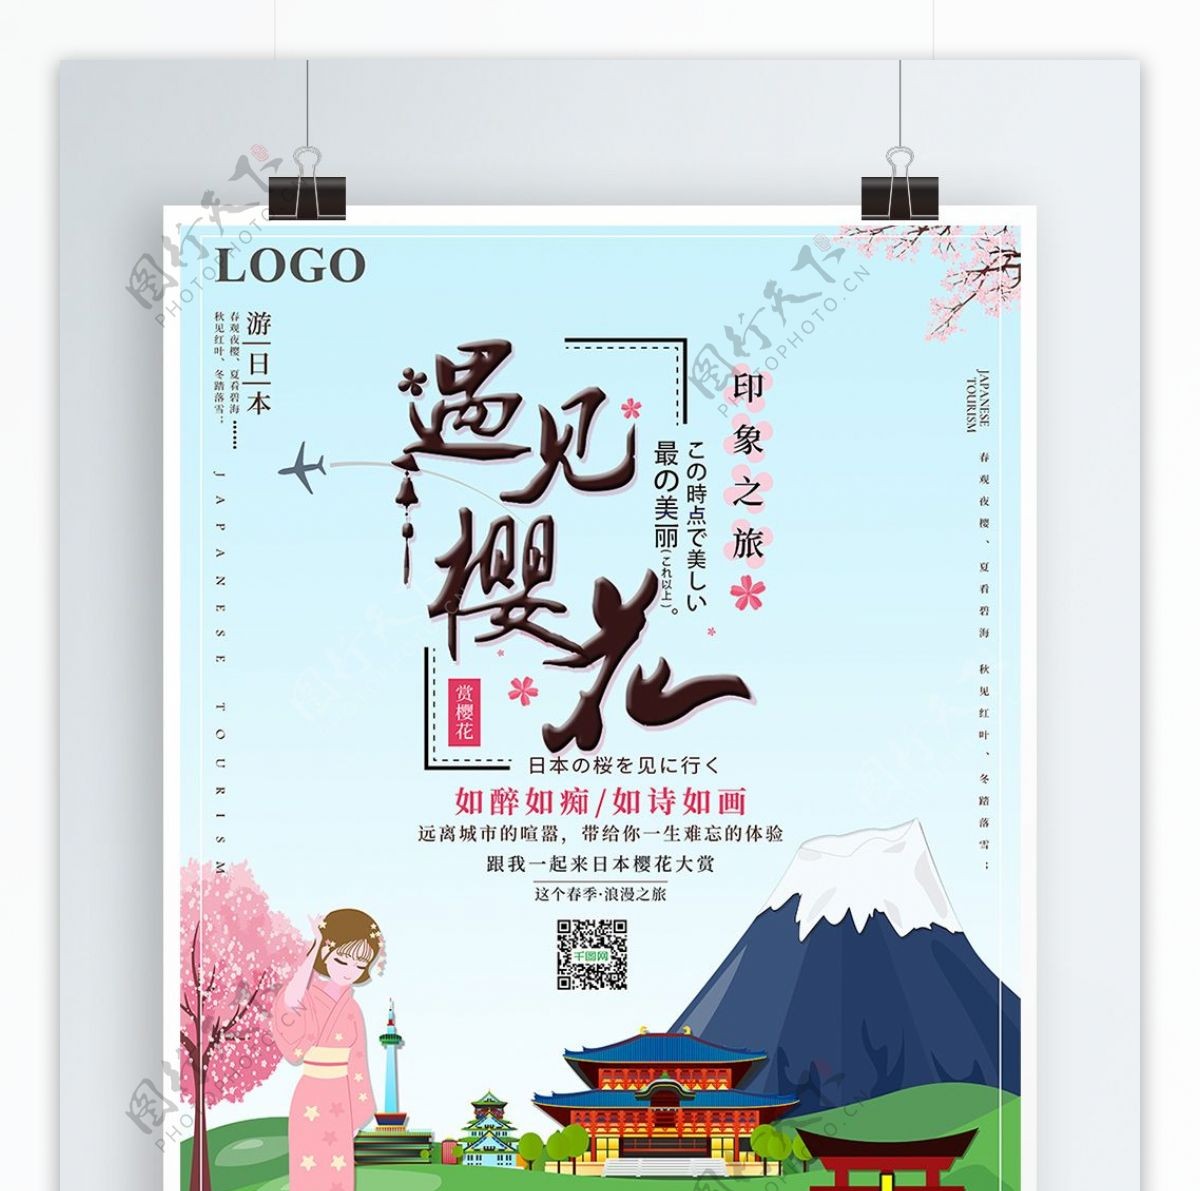 小清新日本游遇见樱花宣传海报